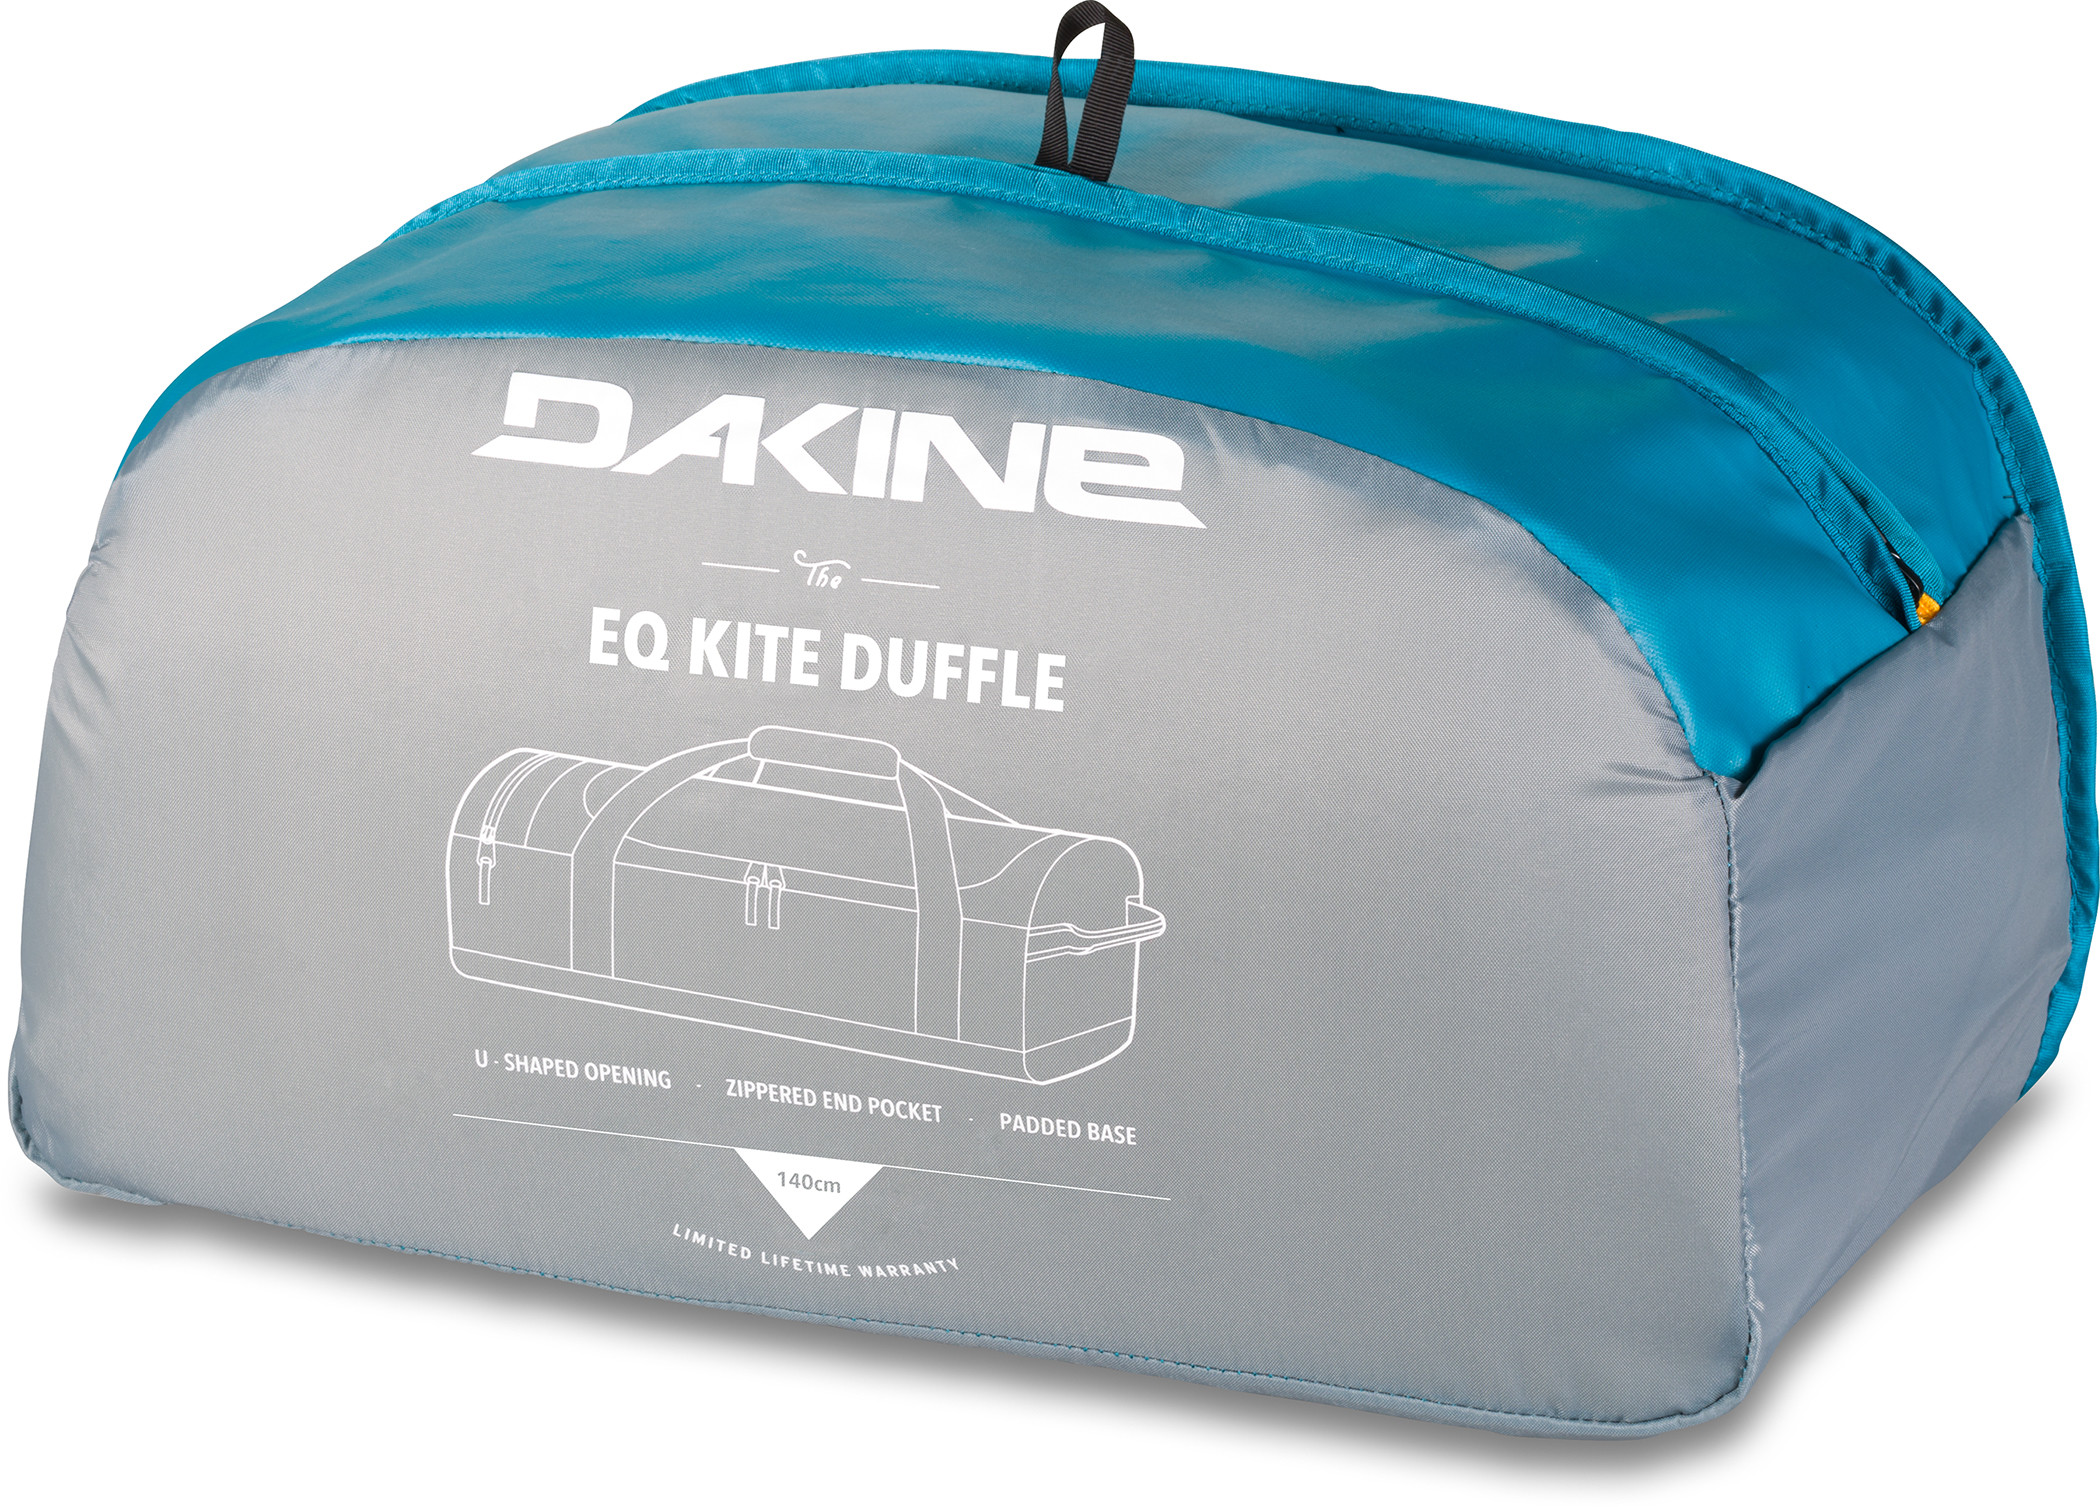 EQ Kite Duffle 140 Bag